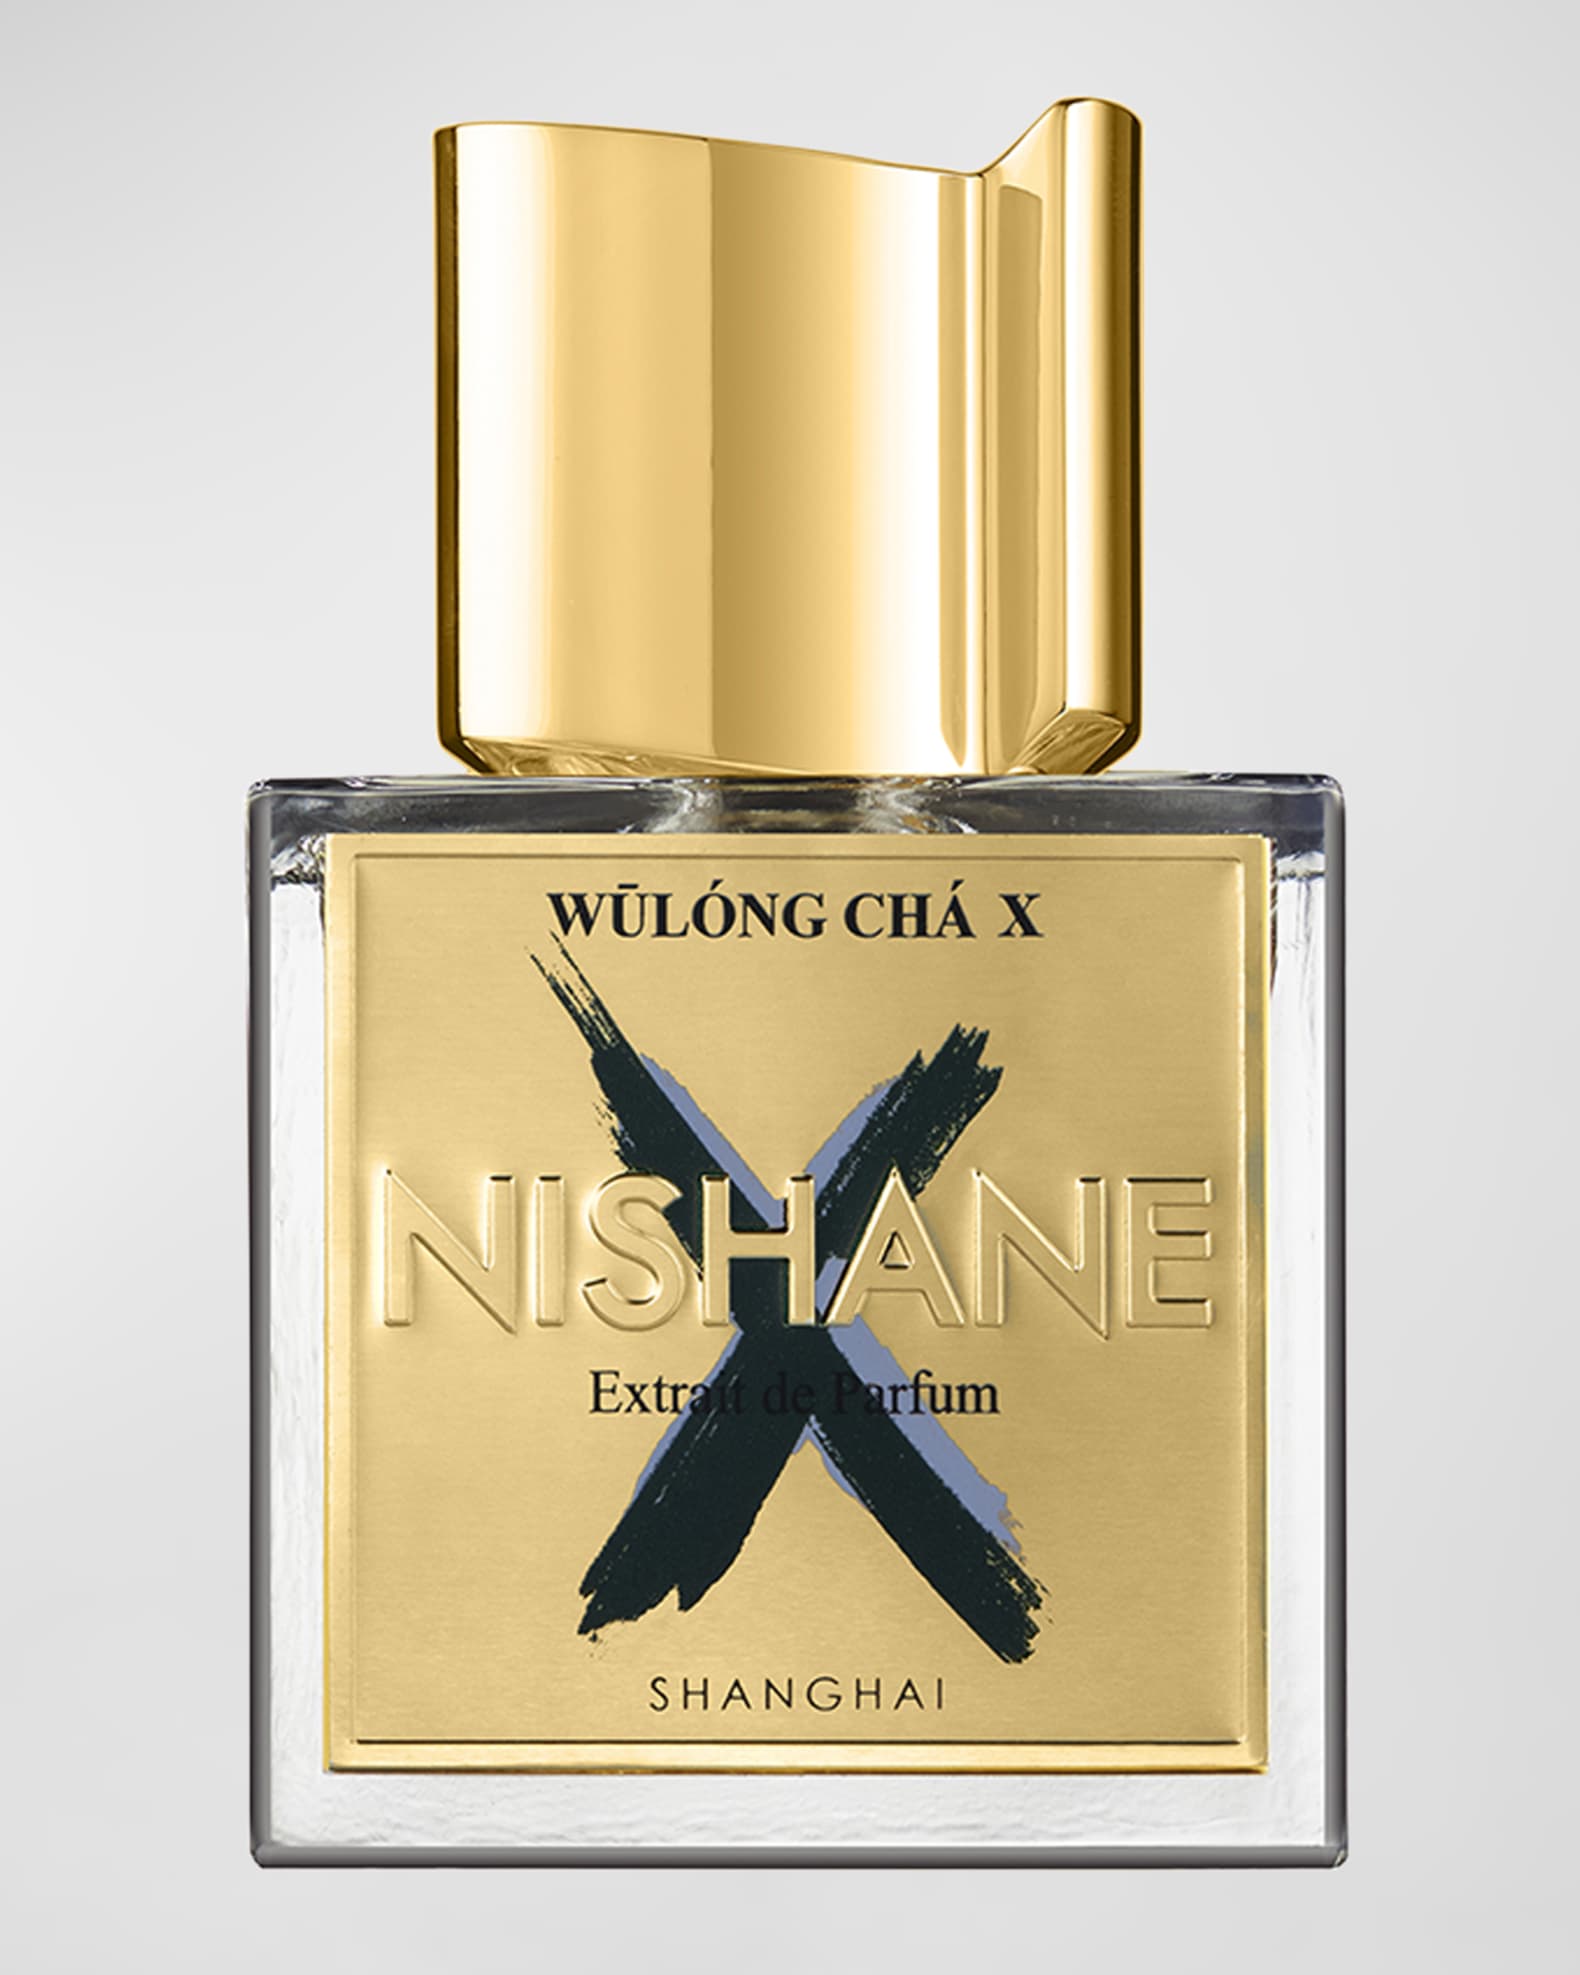 Versace Man Eau Fraiche EDT Men Perfume Cologne Oil 1.7oz (50ml) Mini  Parfum Set